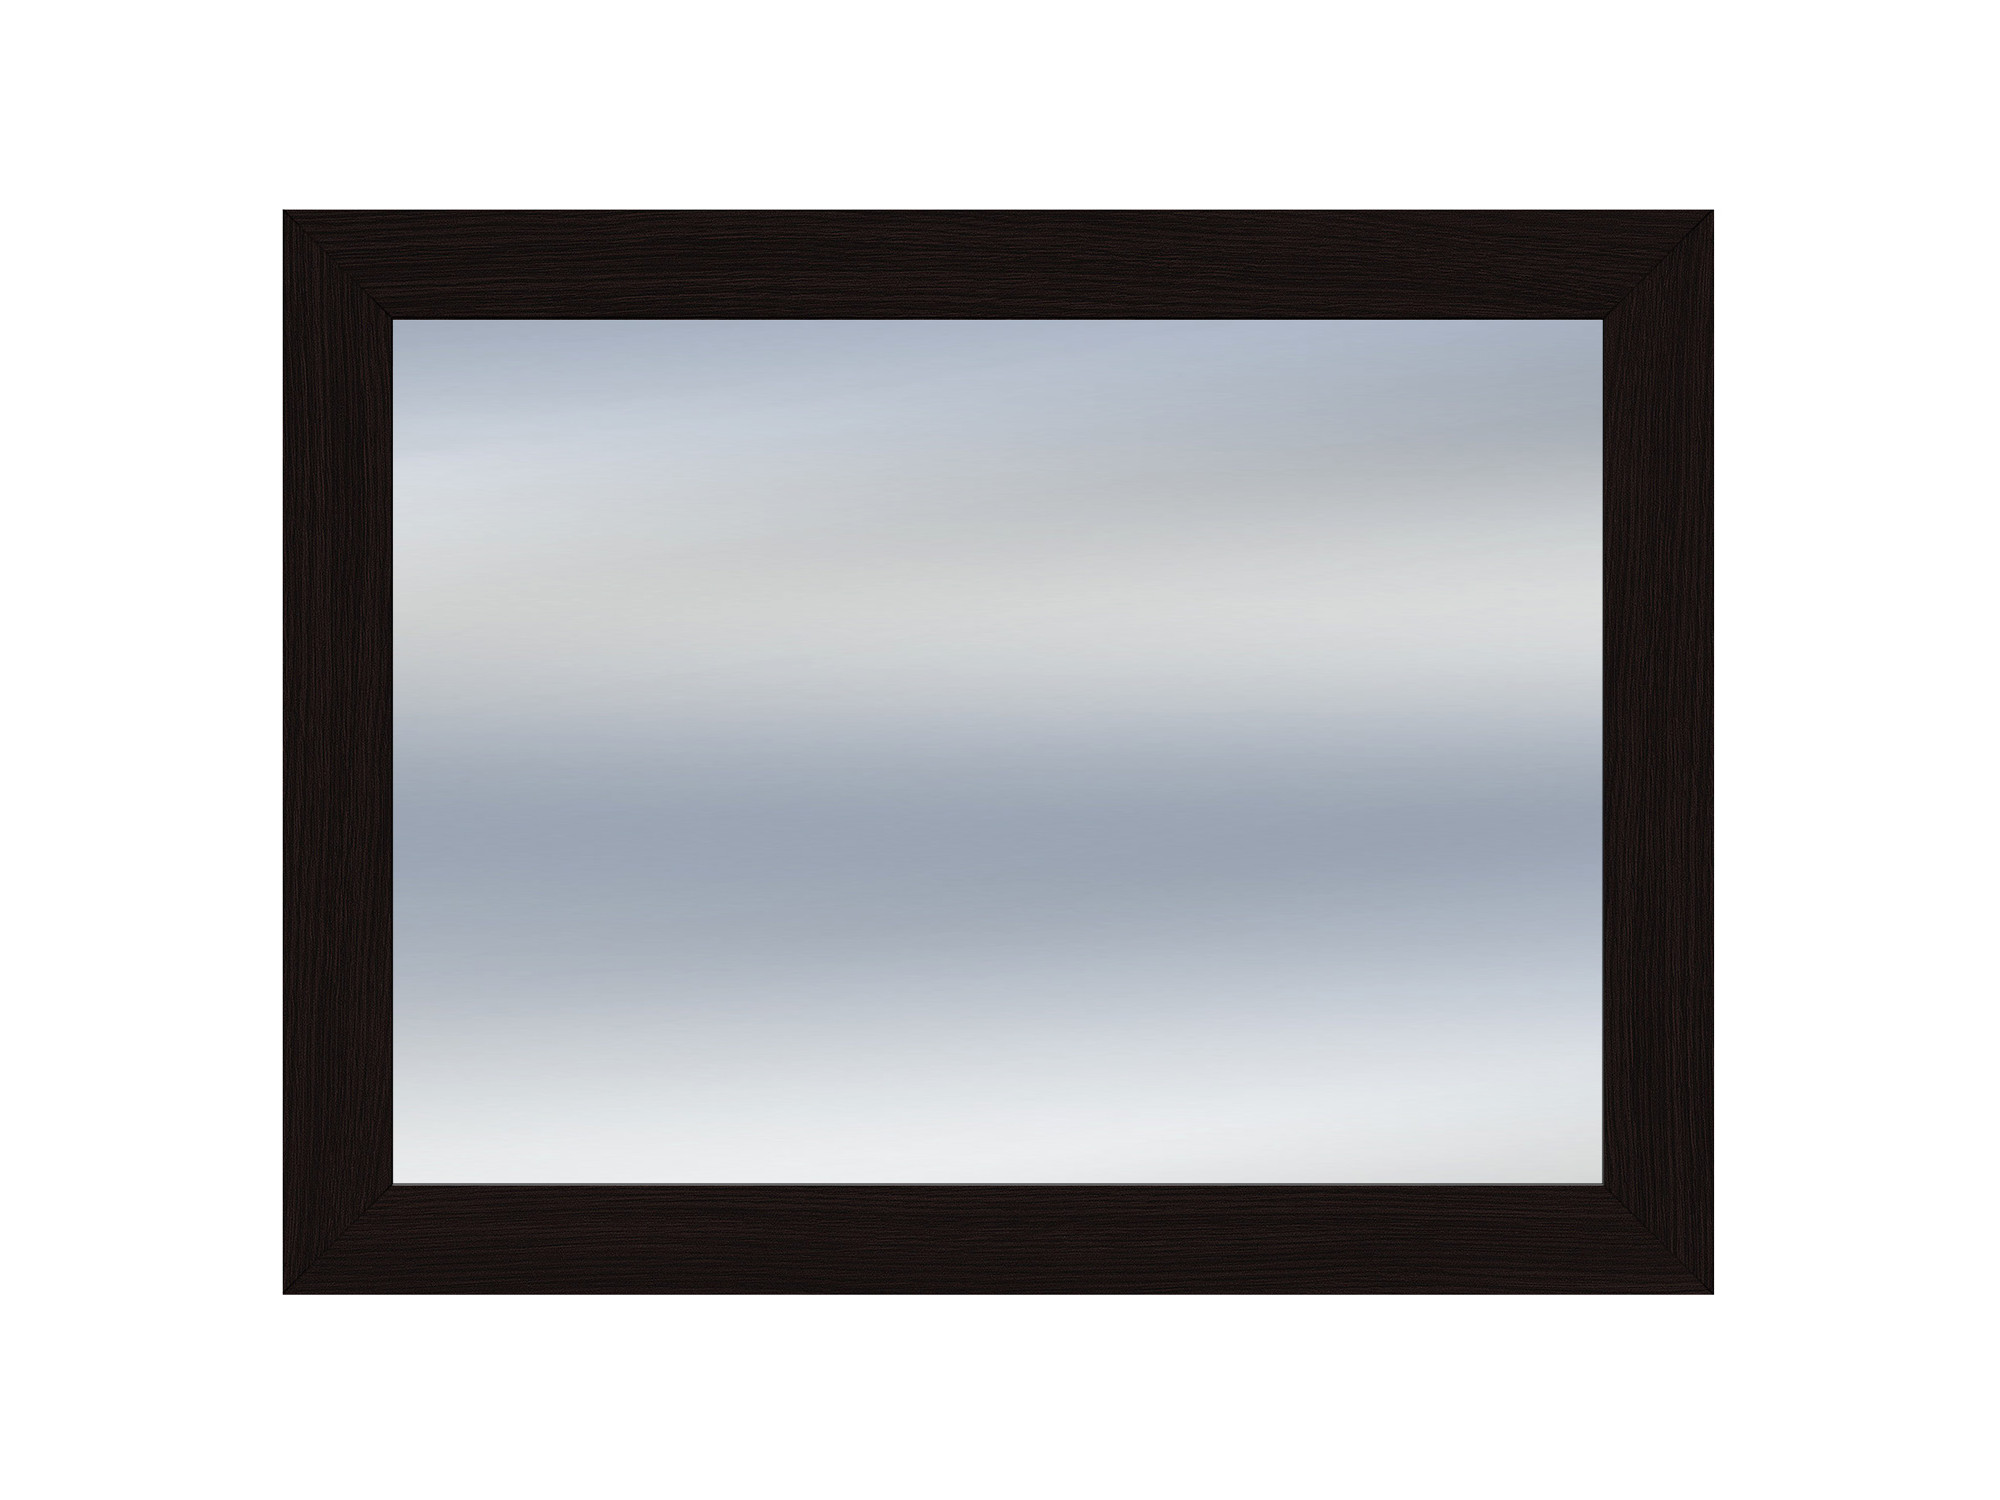 Зеркало над комодом Парма венге, Коричневый темный, МДФ, ЛДСП зеркало над комодом парма венге коричневый темный мдф лдсп